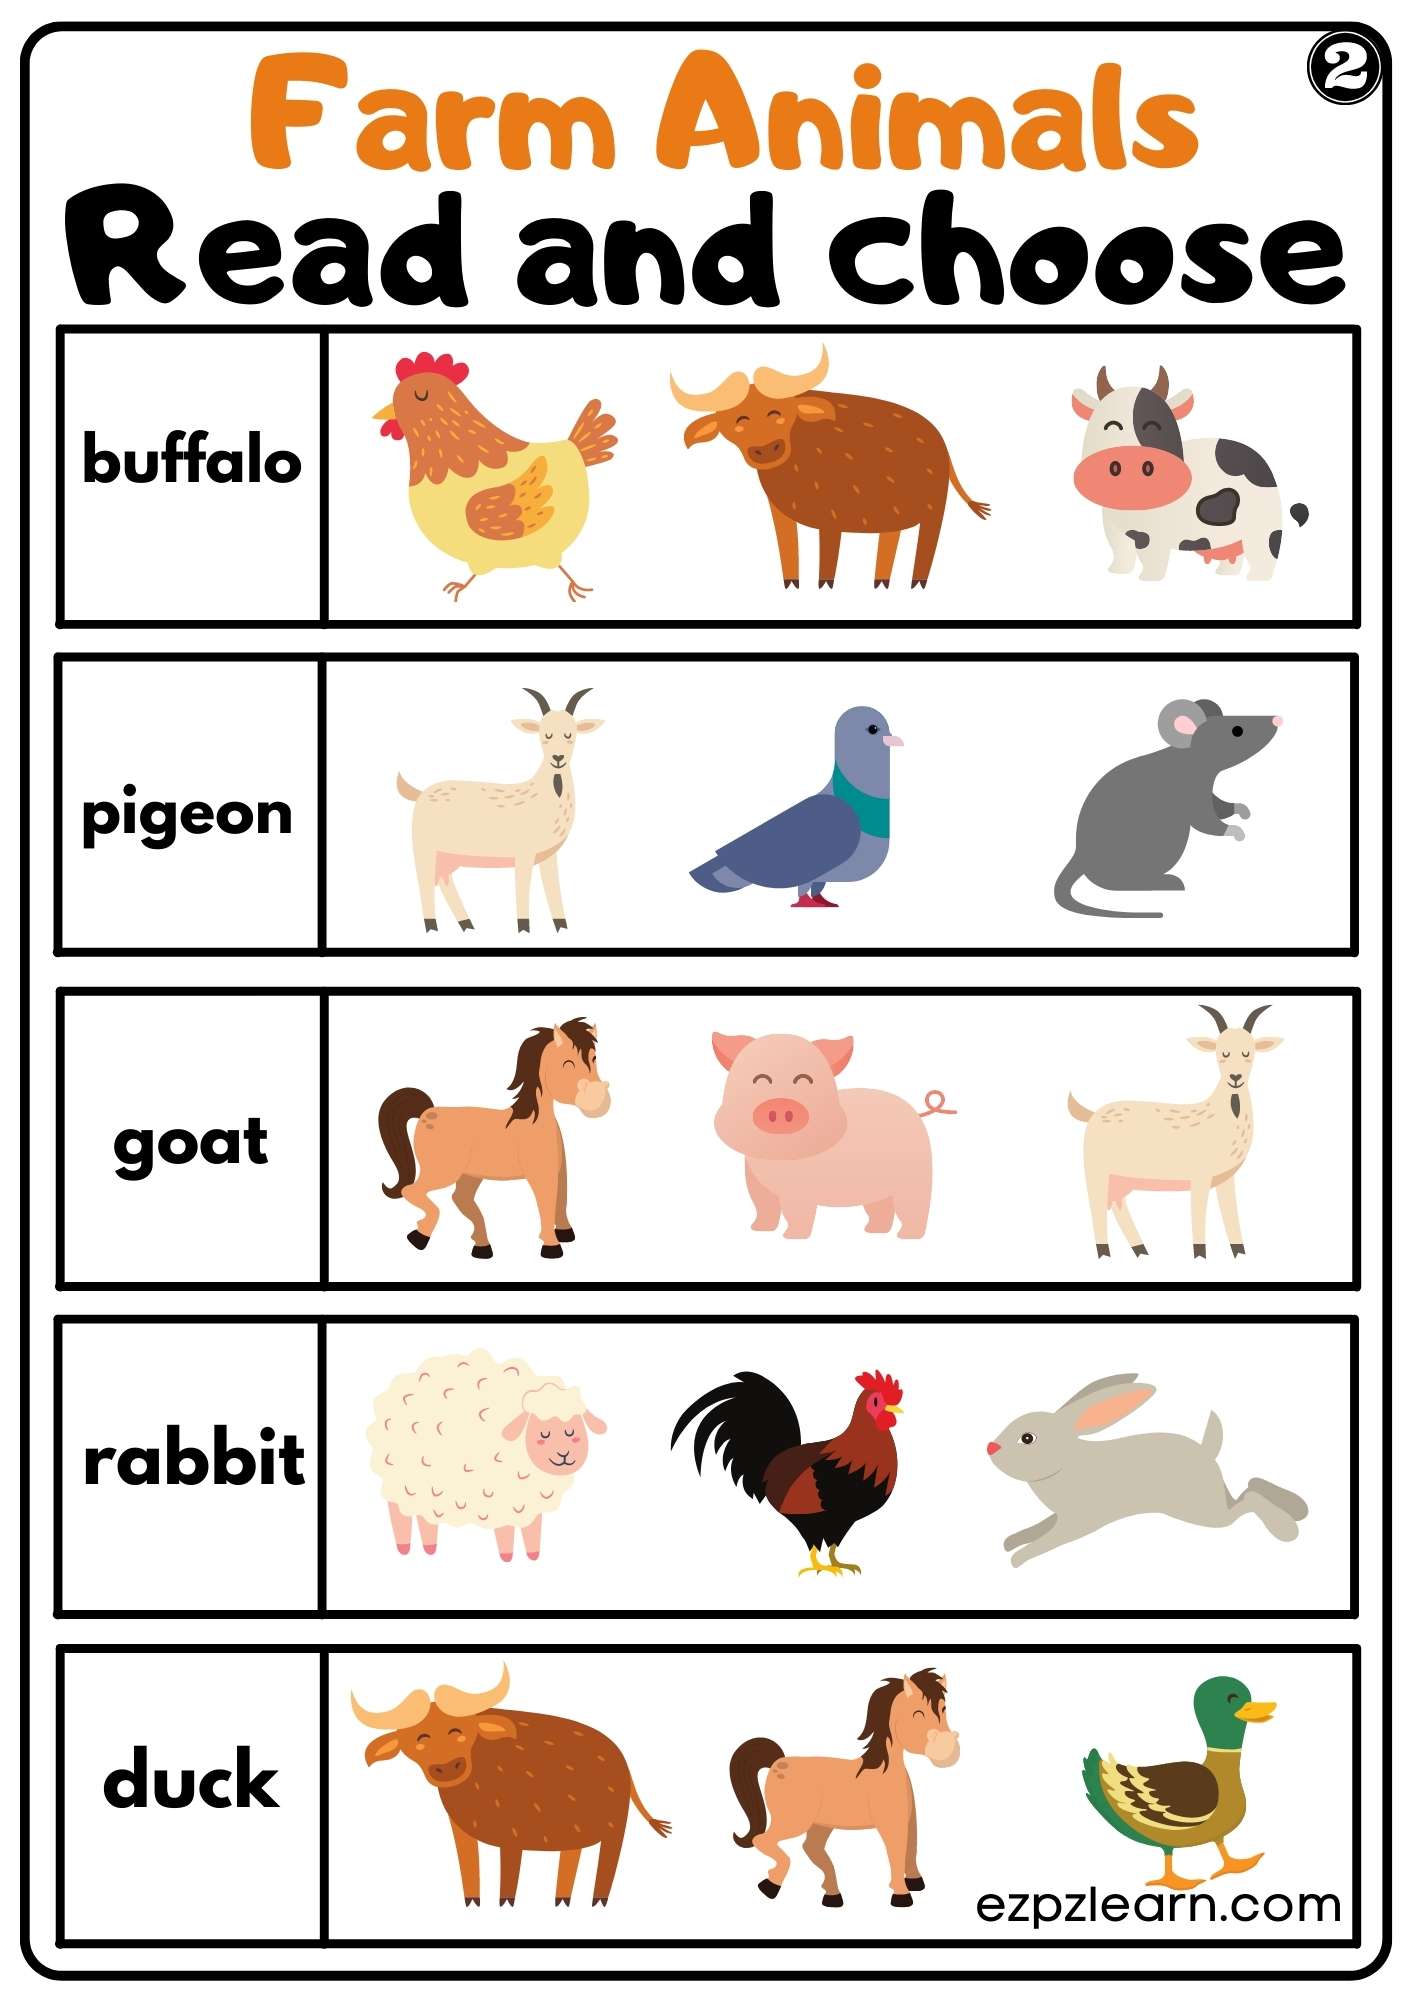 Farm Animals Read and Choose Worksheet for Kindergarten or ESL Students  Free PDF Download set 2 